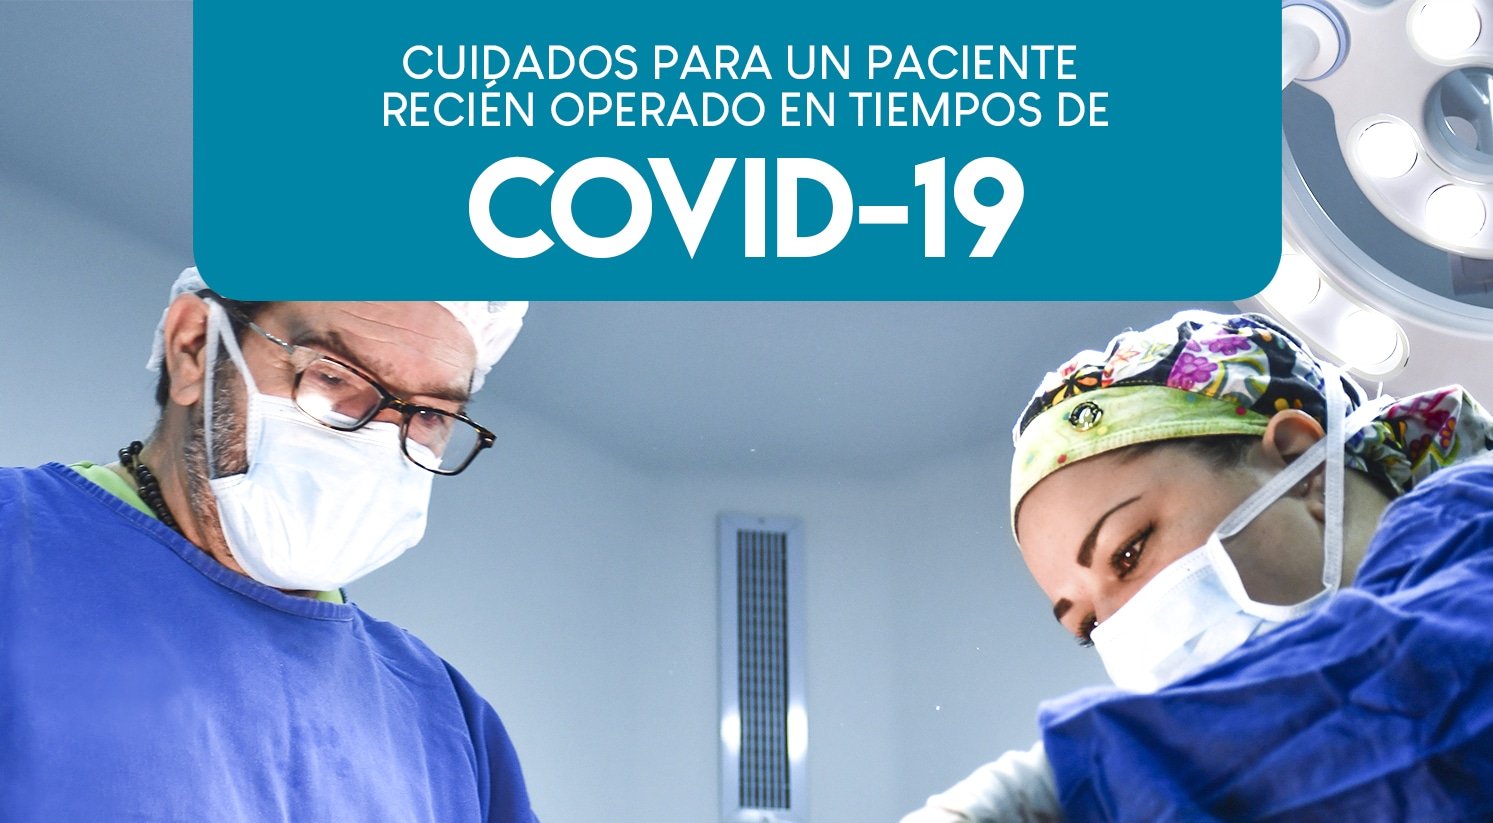 Cuidados para un paciente recién operado en tiempos de Covid- 19